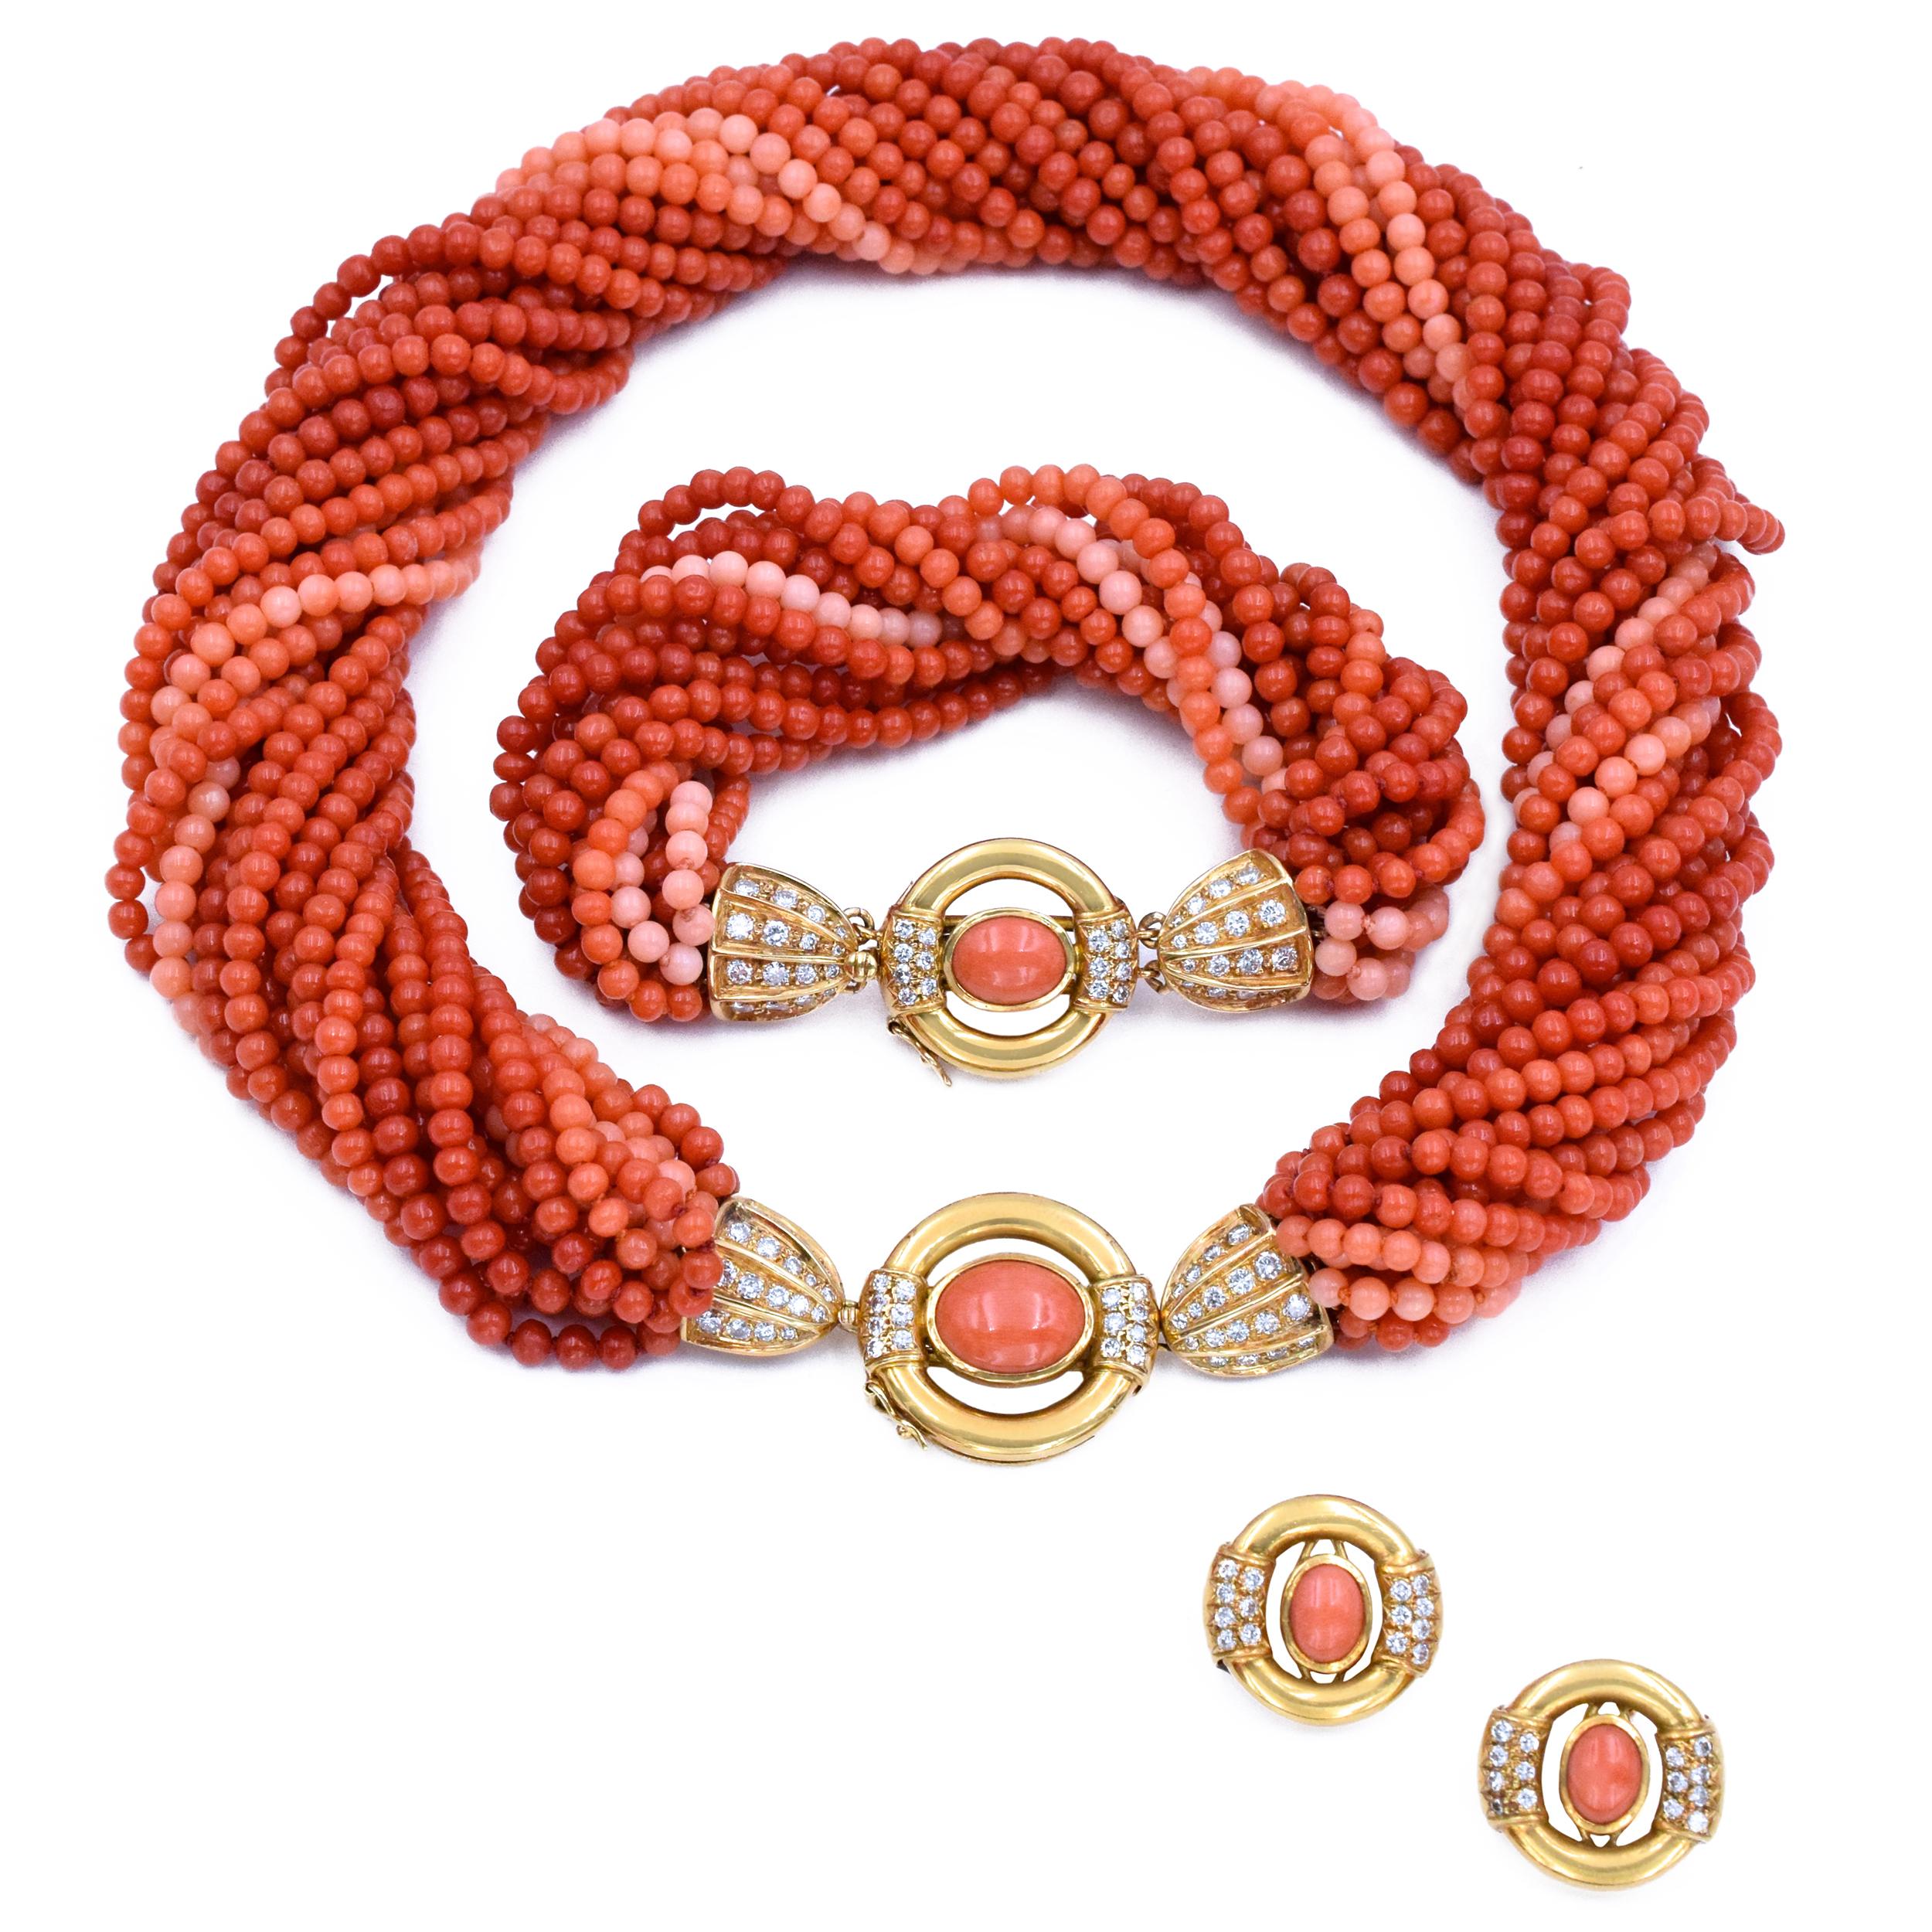 GUCCI Halskette, Armband und Ohrringe aus Korallen und Diamanten,  bestehend aus einer Korallenperlenkette und einem Armband im Torsade-Design, der Verschluss und die Ohrringe sind in der Mitte mit einem ovalen Korallen-Cabochon besetzt, der durch